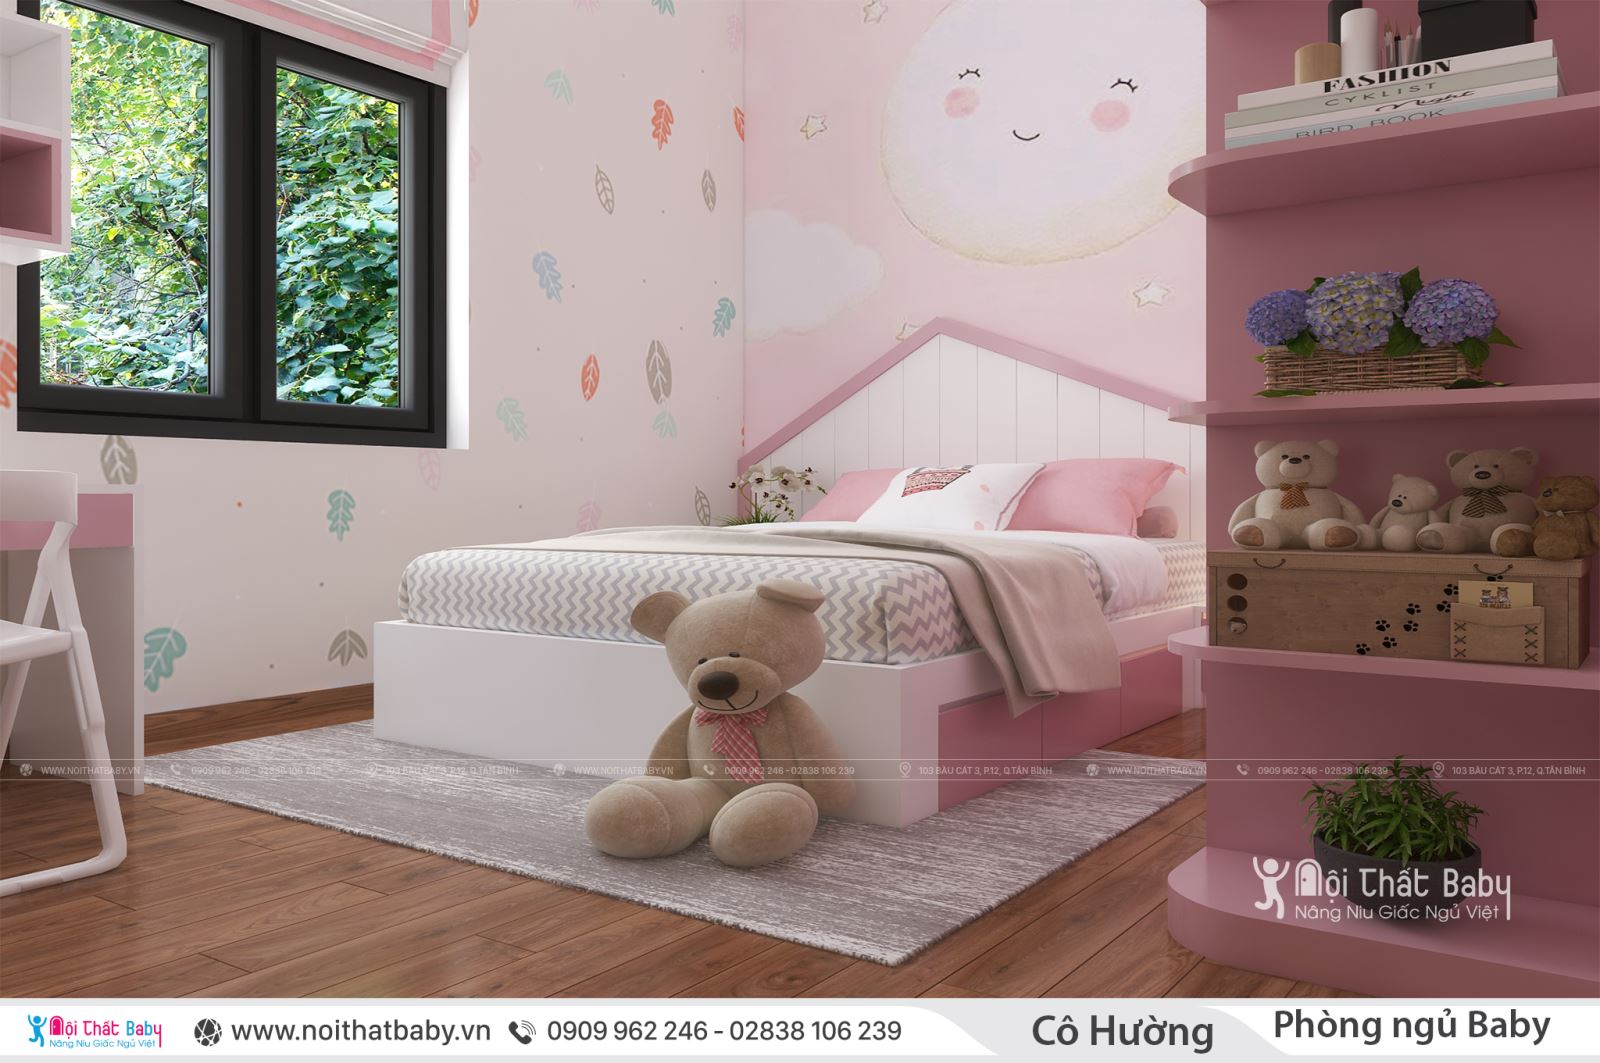 Những mẫu giường ngủ hình ngôi nhà cho baby của bạn